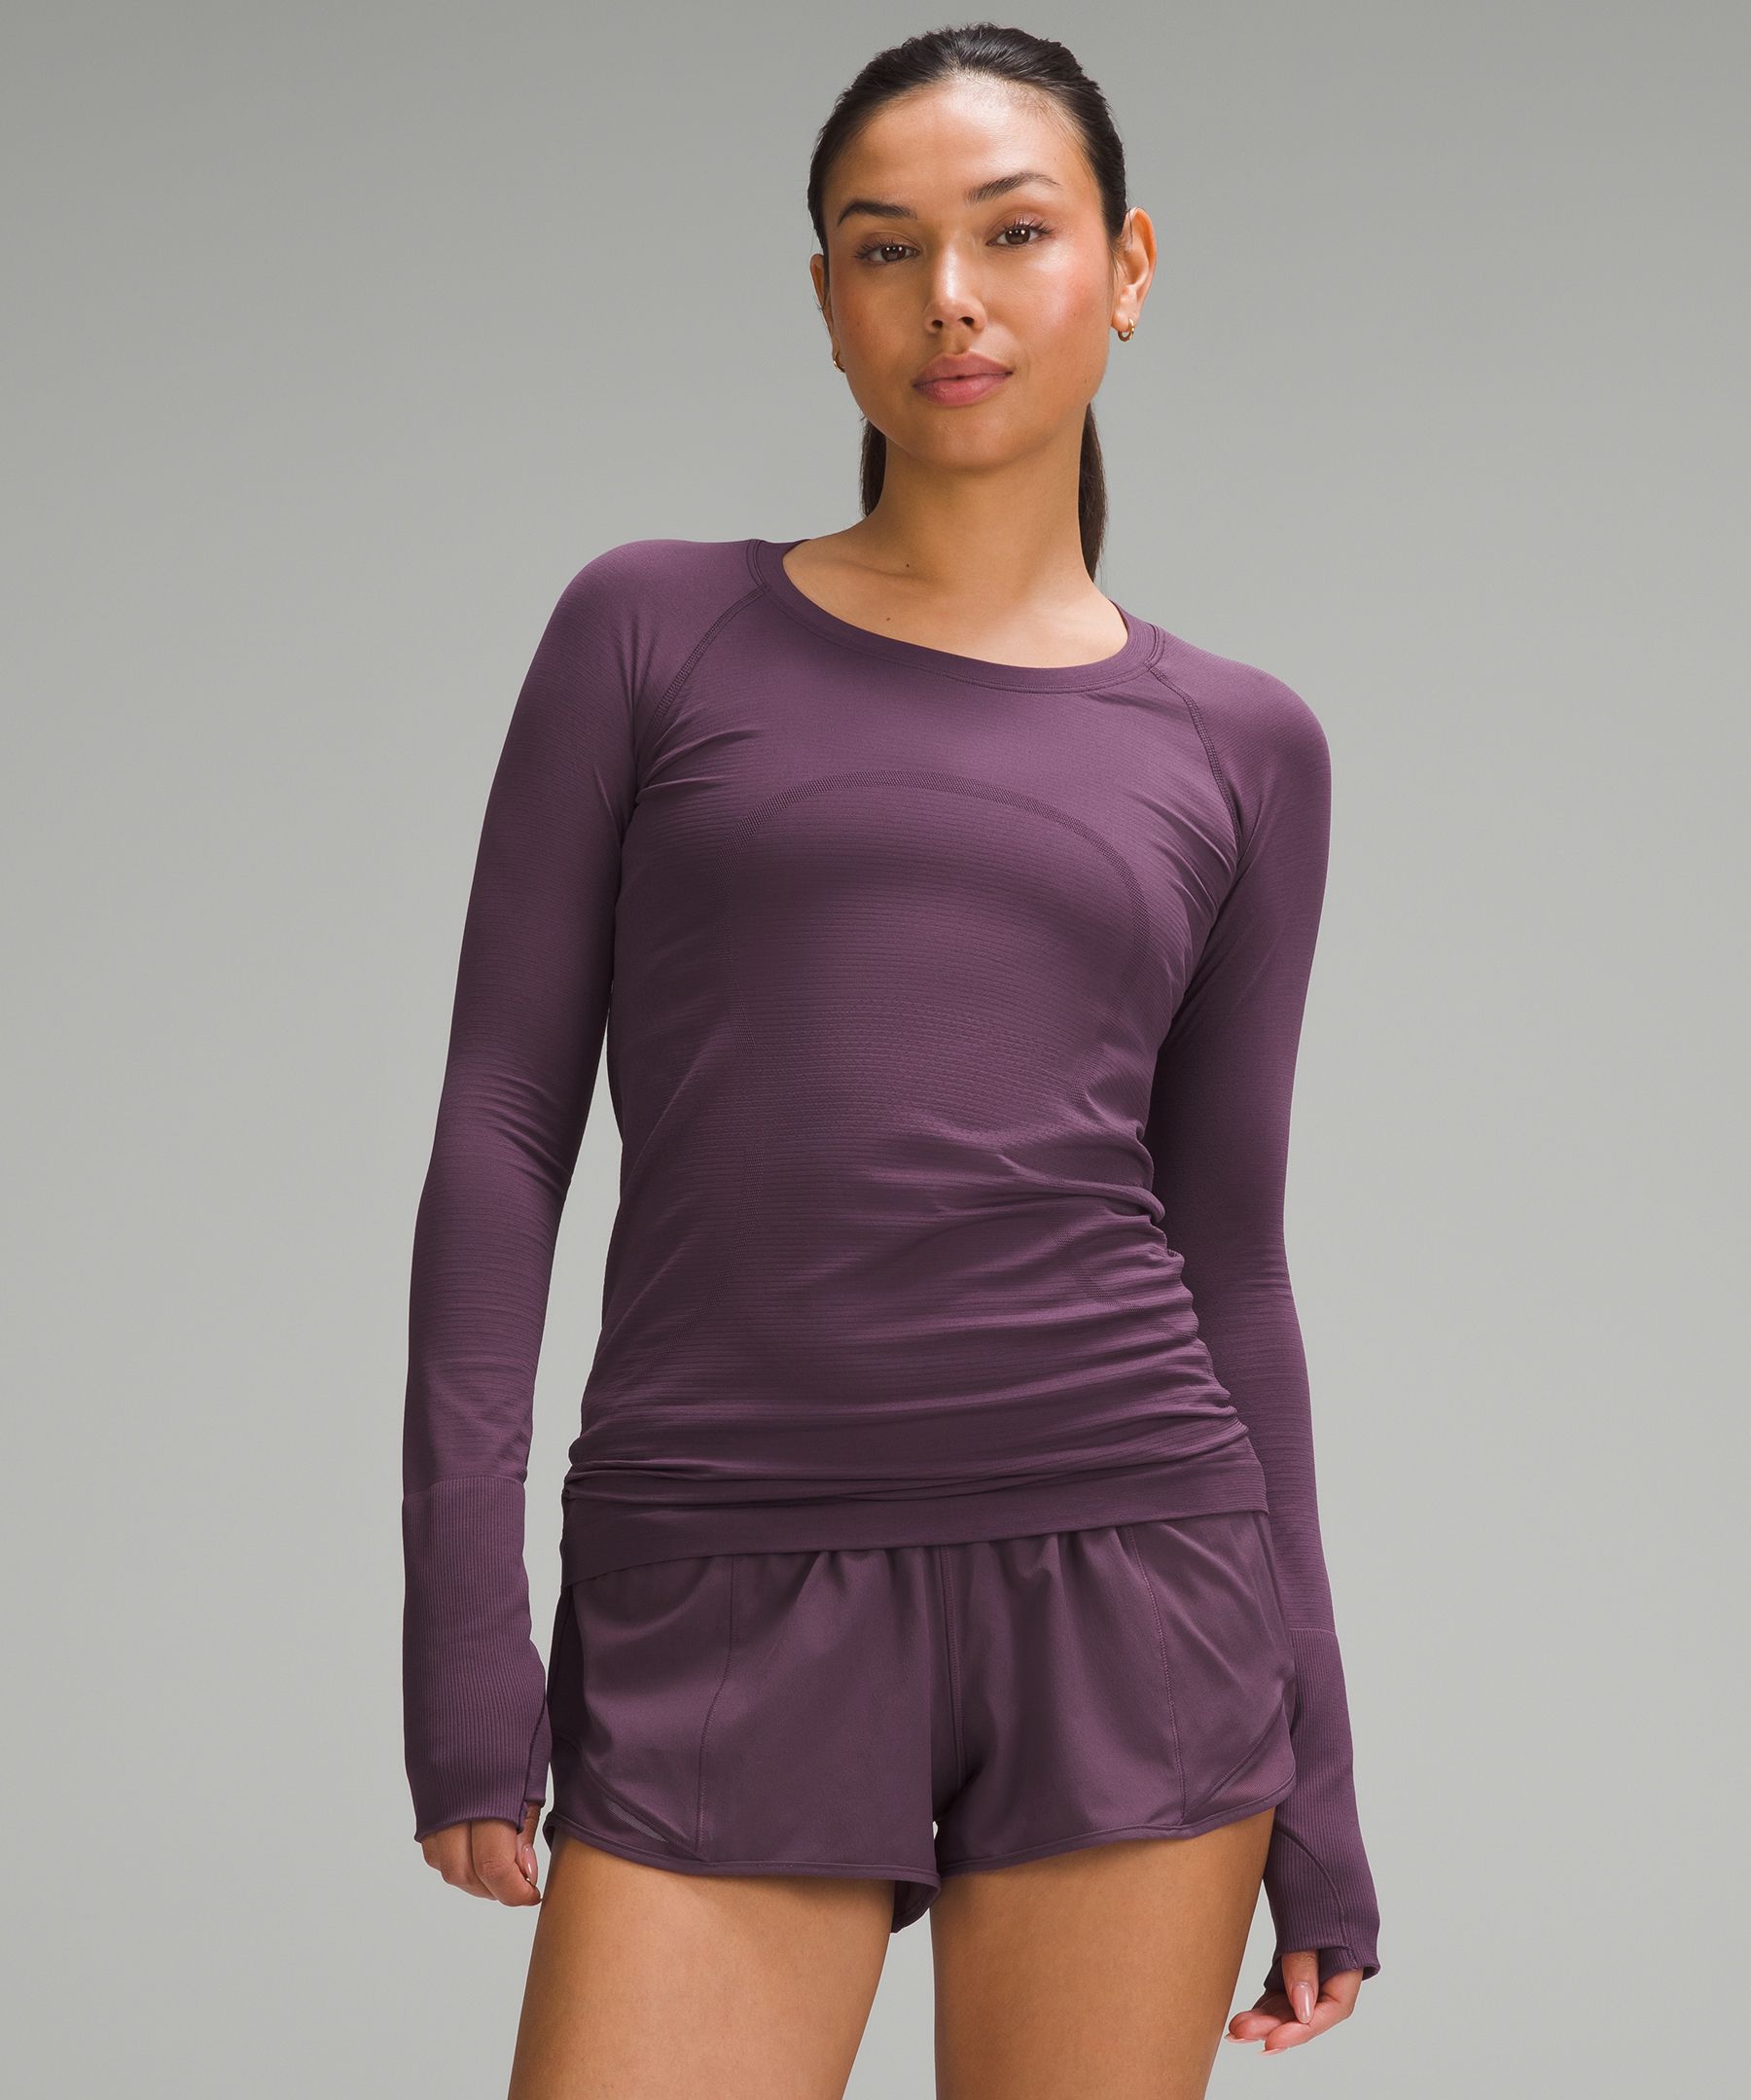 Swiftly Tech Long-Sleeve Shirt 2.0 | Women's Long Sleeve Shirts 